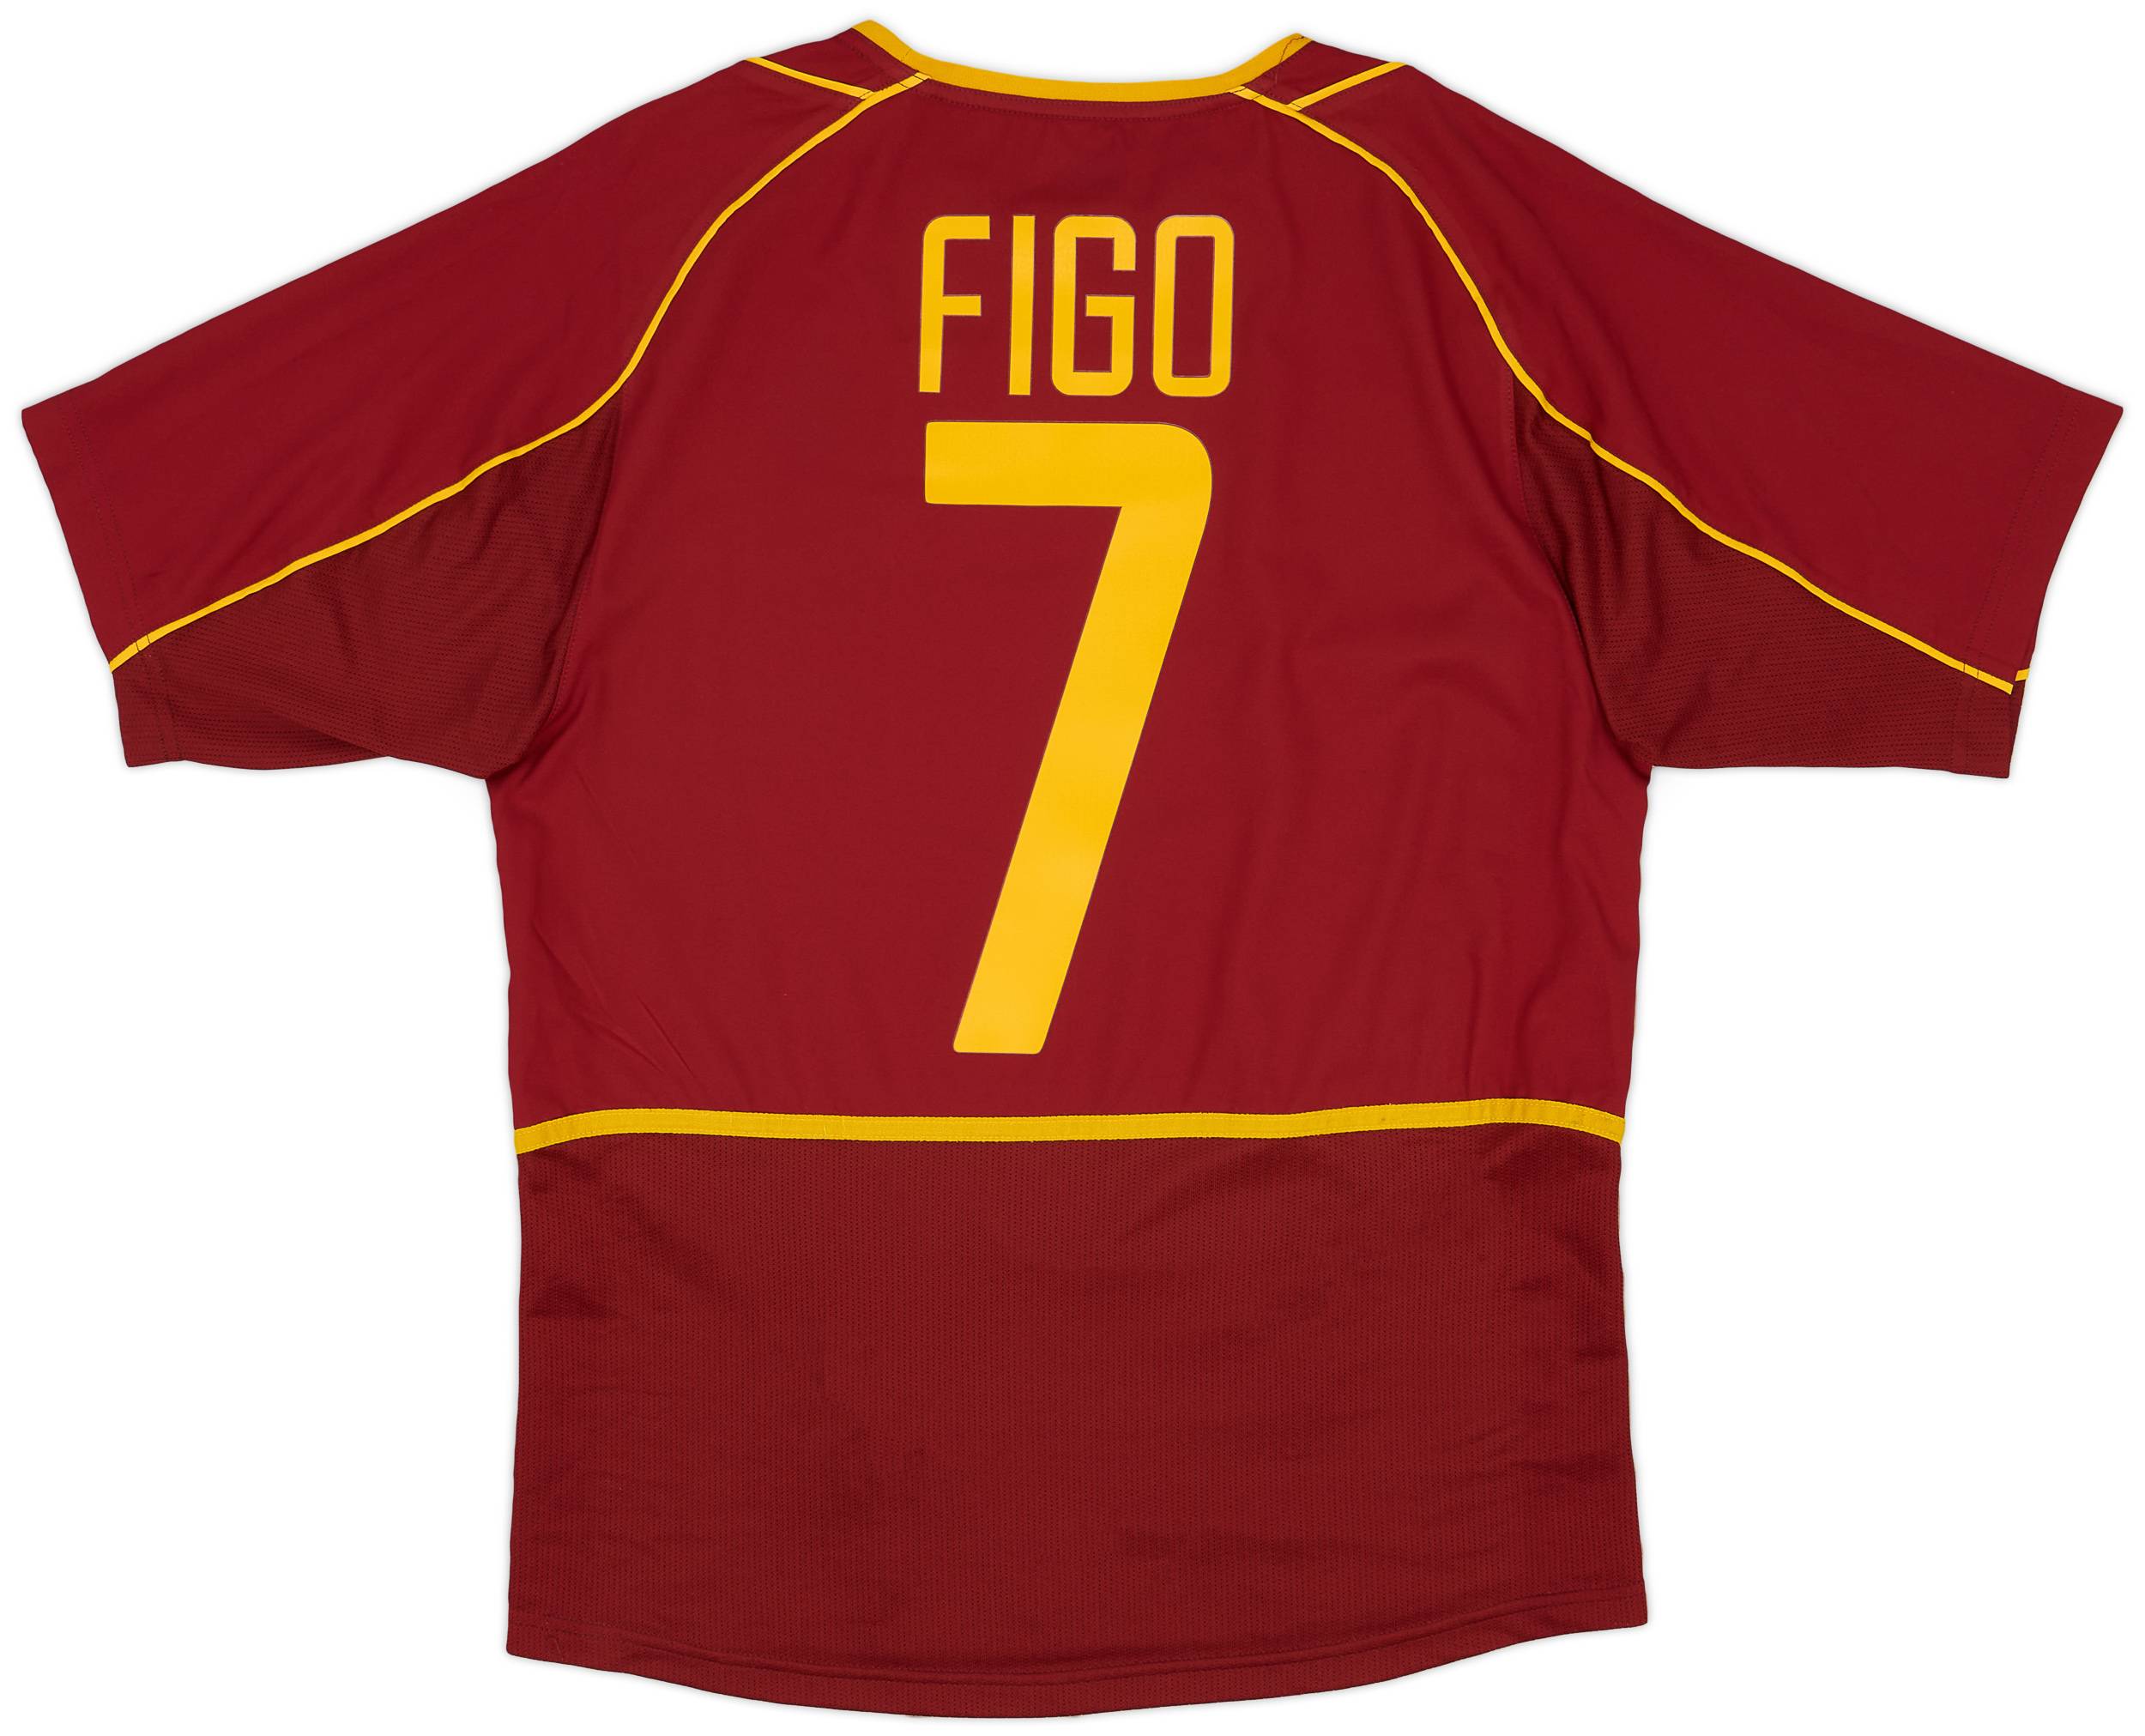 2002-04 Portugal Home Shirt Figo #7 - 9/10 - (S)